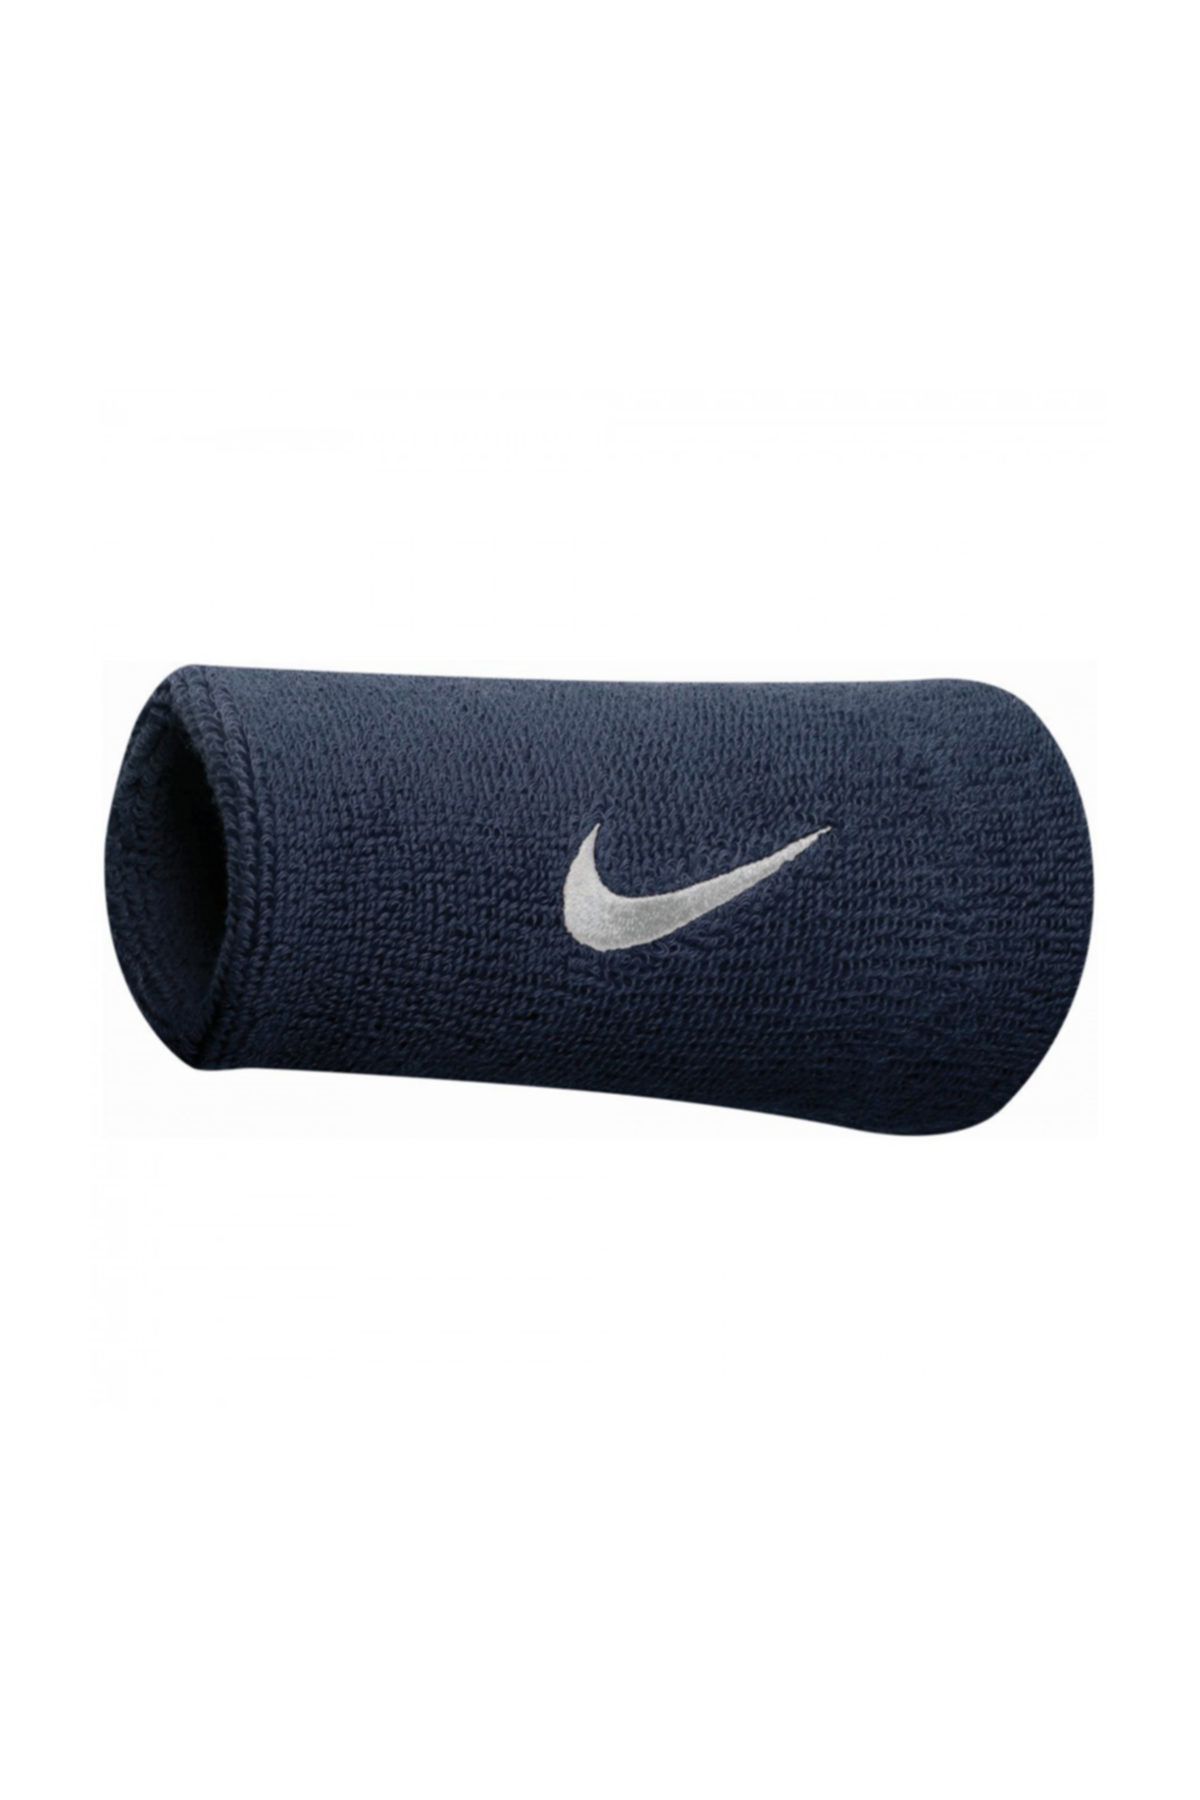 Nike Sporcu Aksesuarları - Swoosh Uzun Bileklik - N.NN.05.416.OS